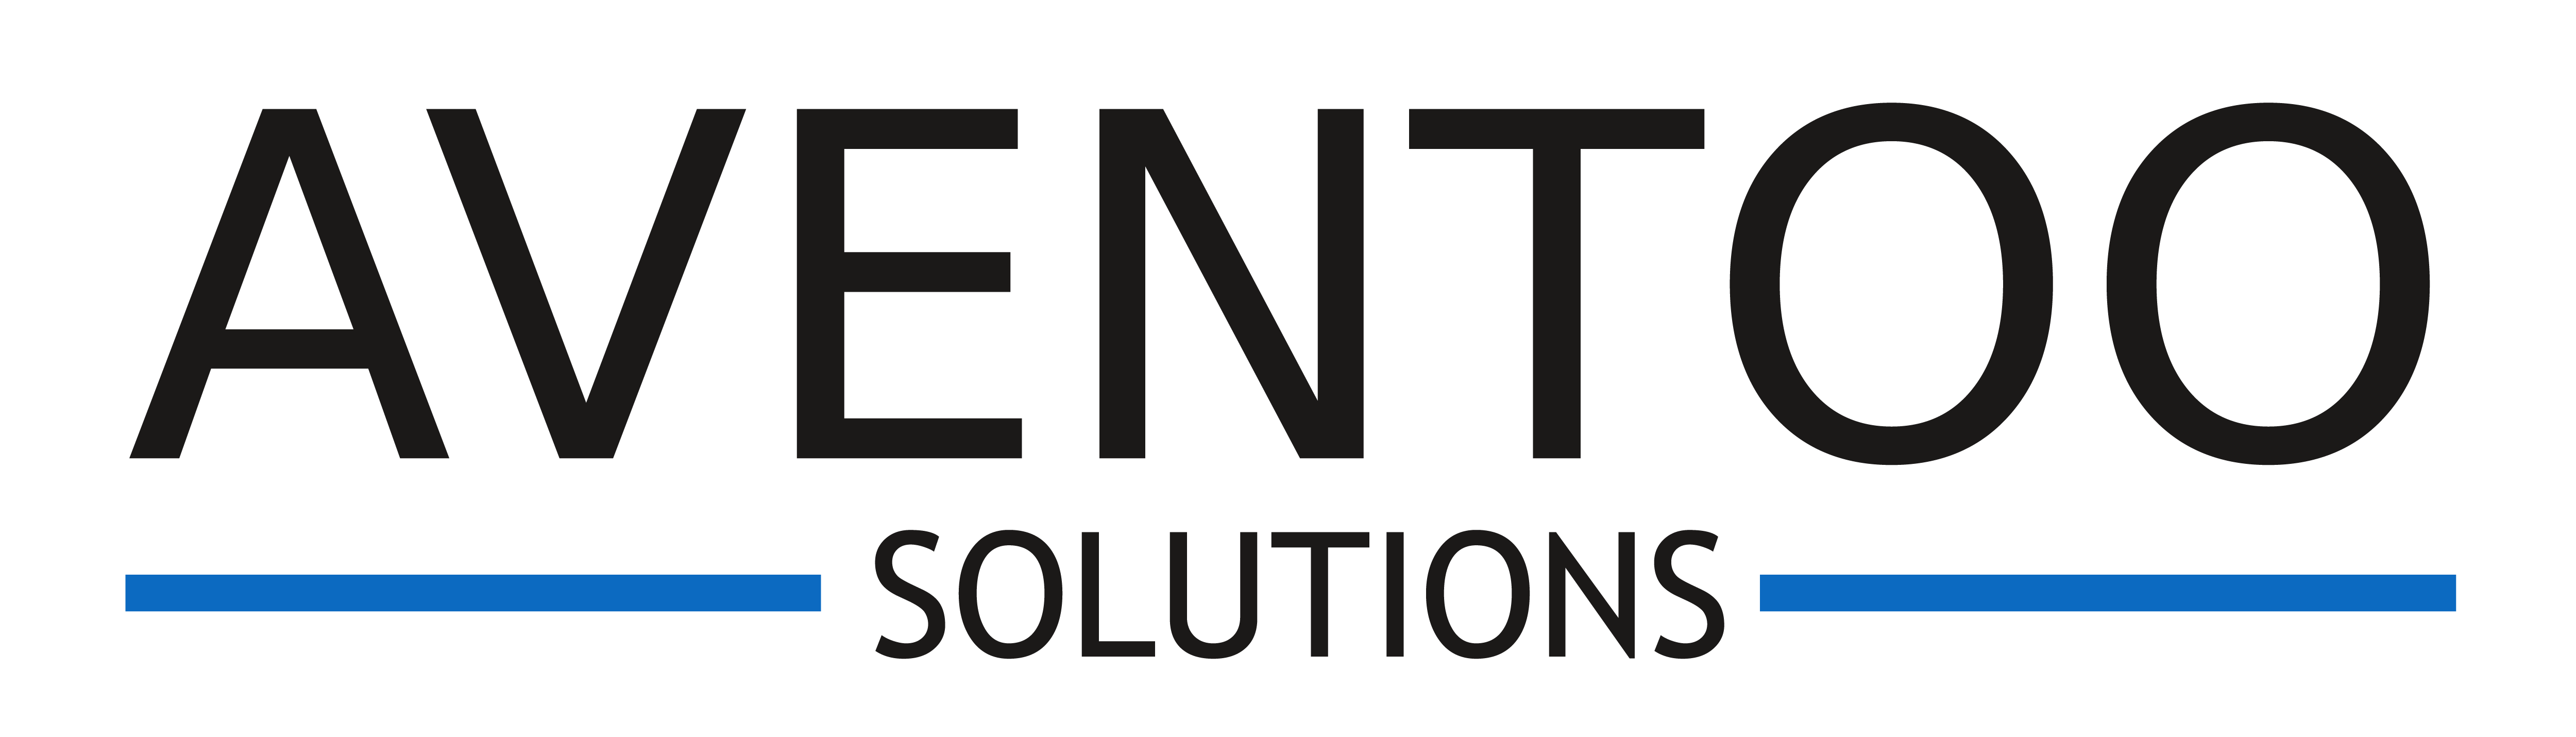 Aventoo Solutions Logo